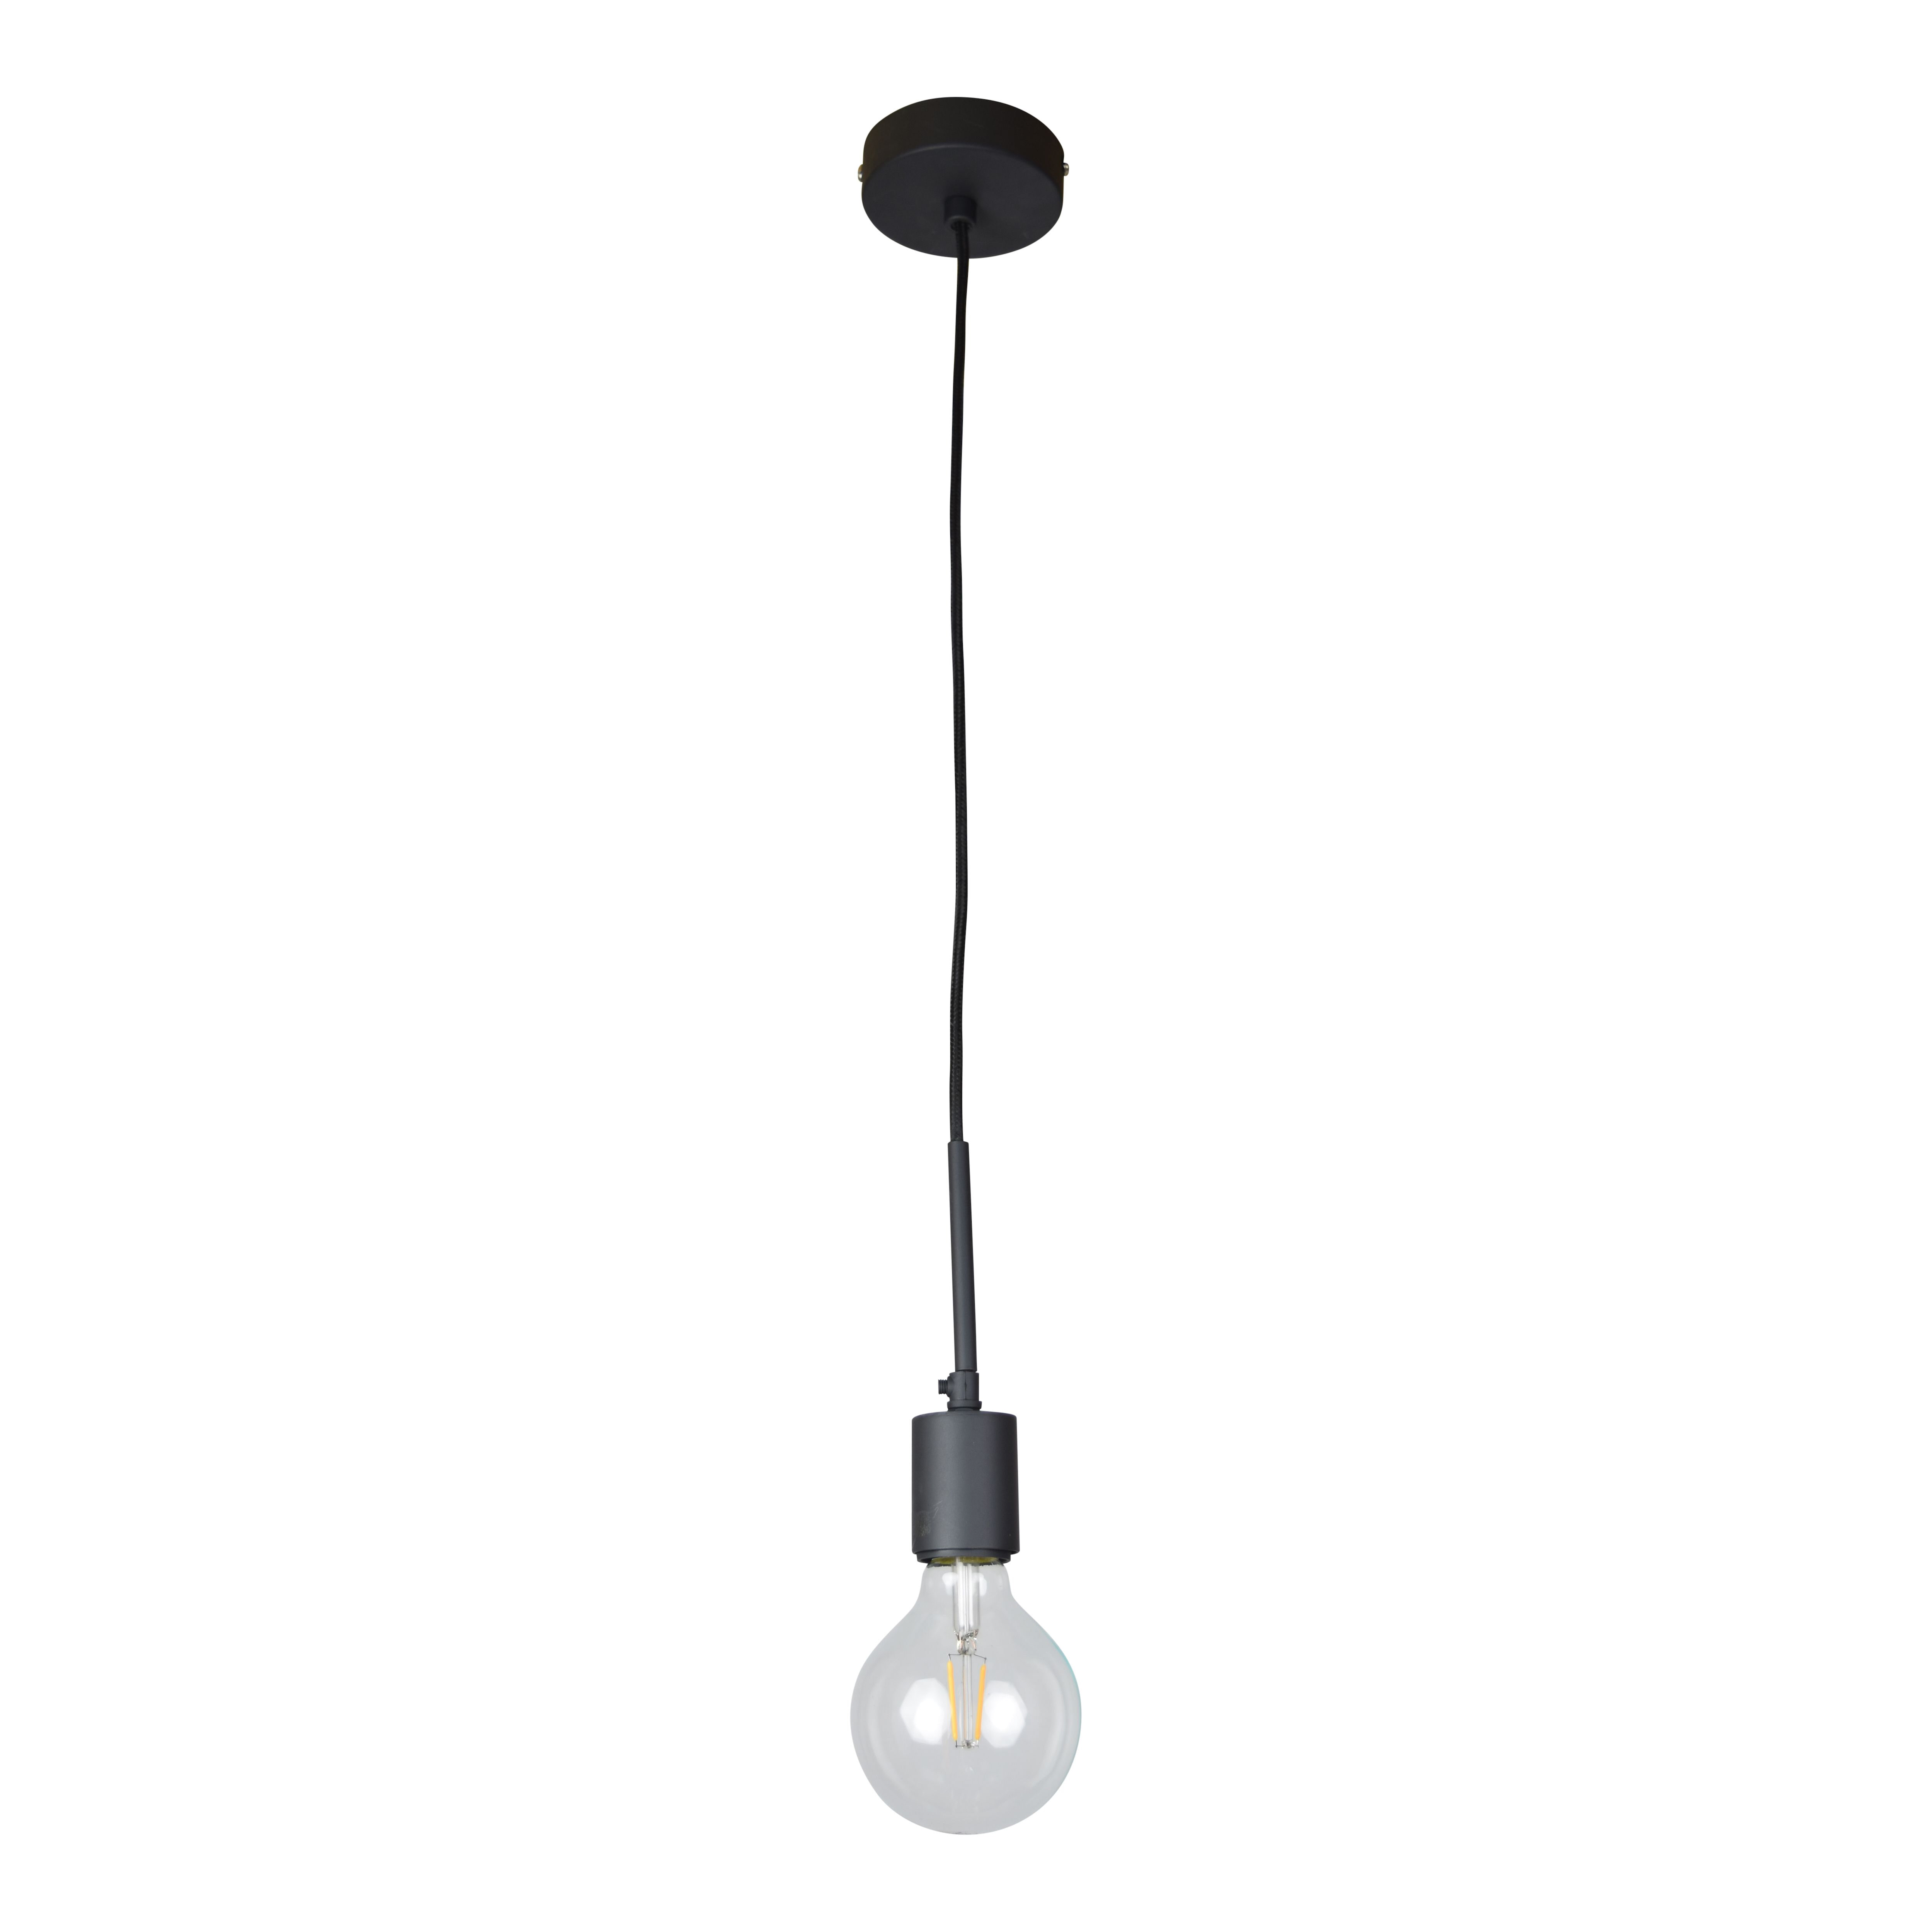 Urban Interiors hanglamp Bulby Strijkijzer - Zwart